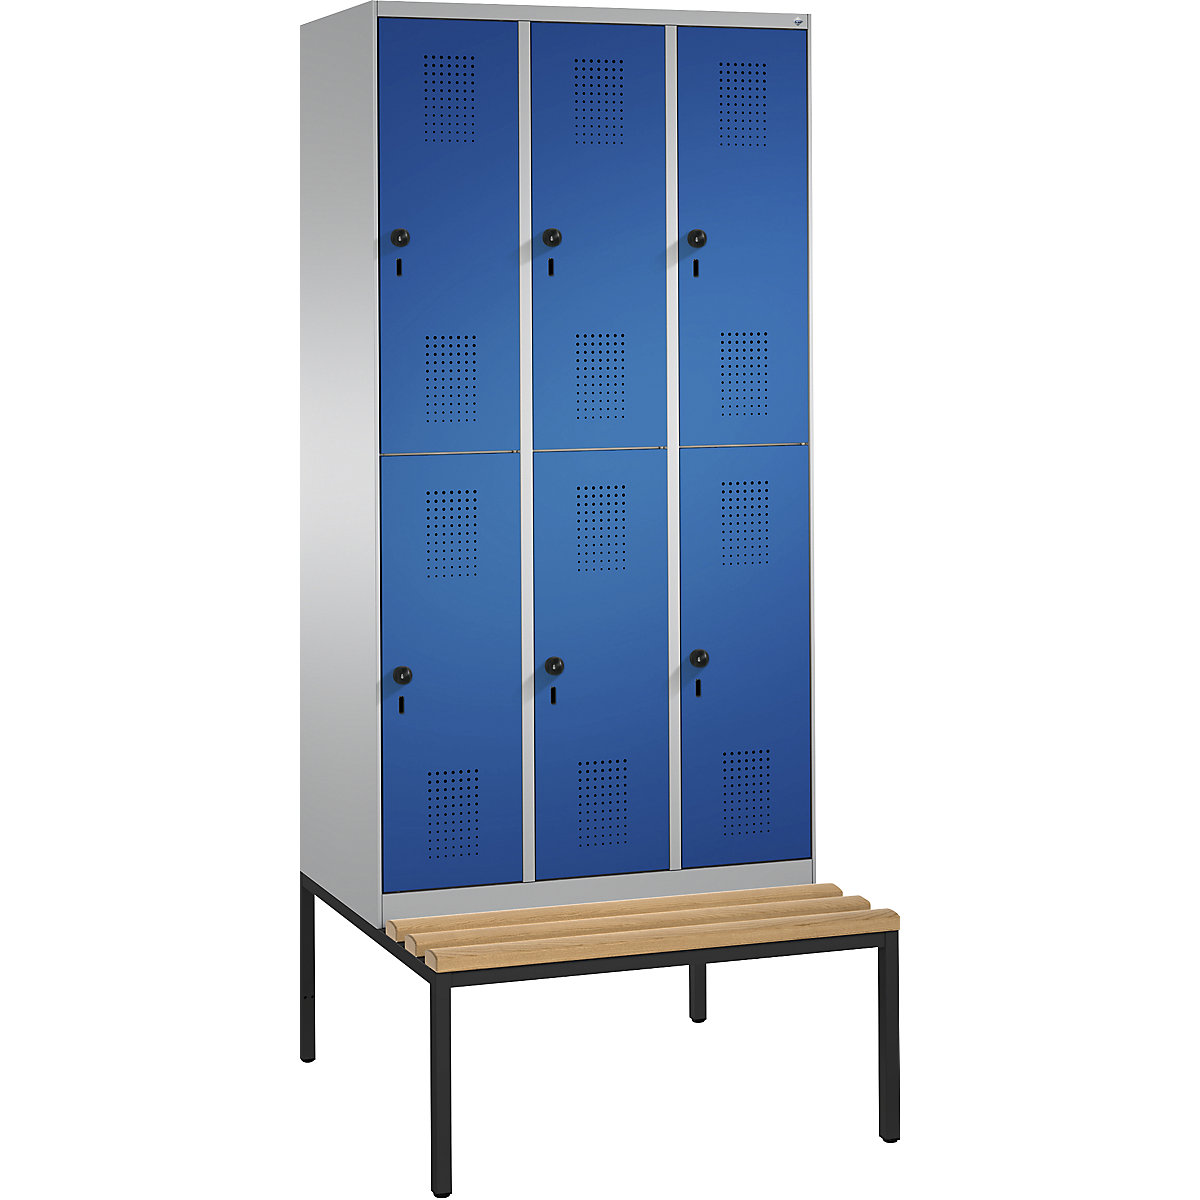 Dvoupatrová šatní skříň s lavicí EVOLO – C+P, 3 oddíly, vždy 2 boxy, šířka oddílu 300 mm, bílý hliník / enciánová modrá-4